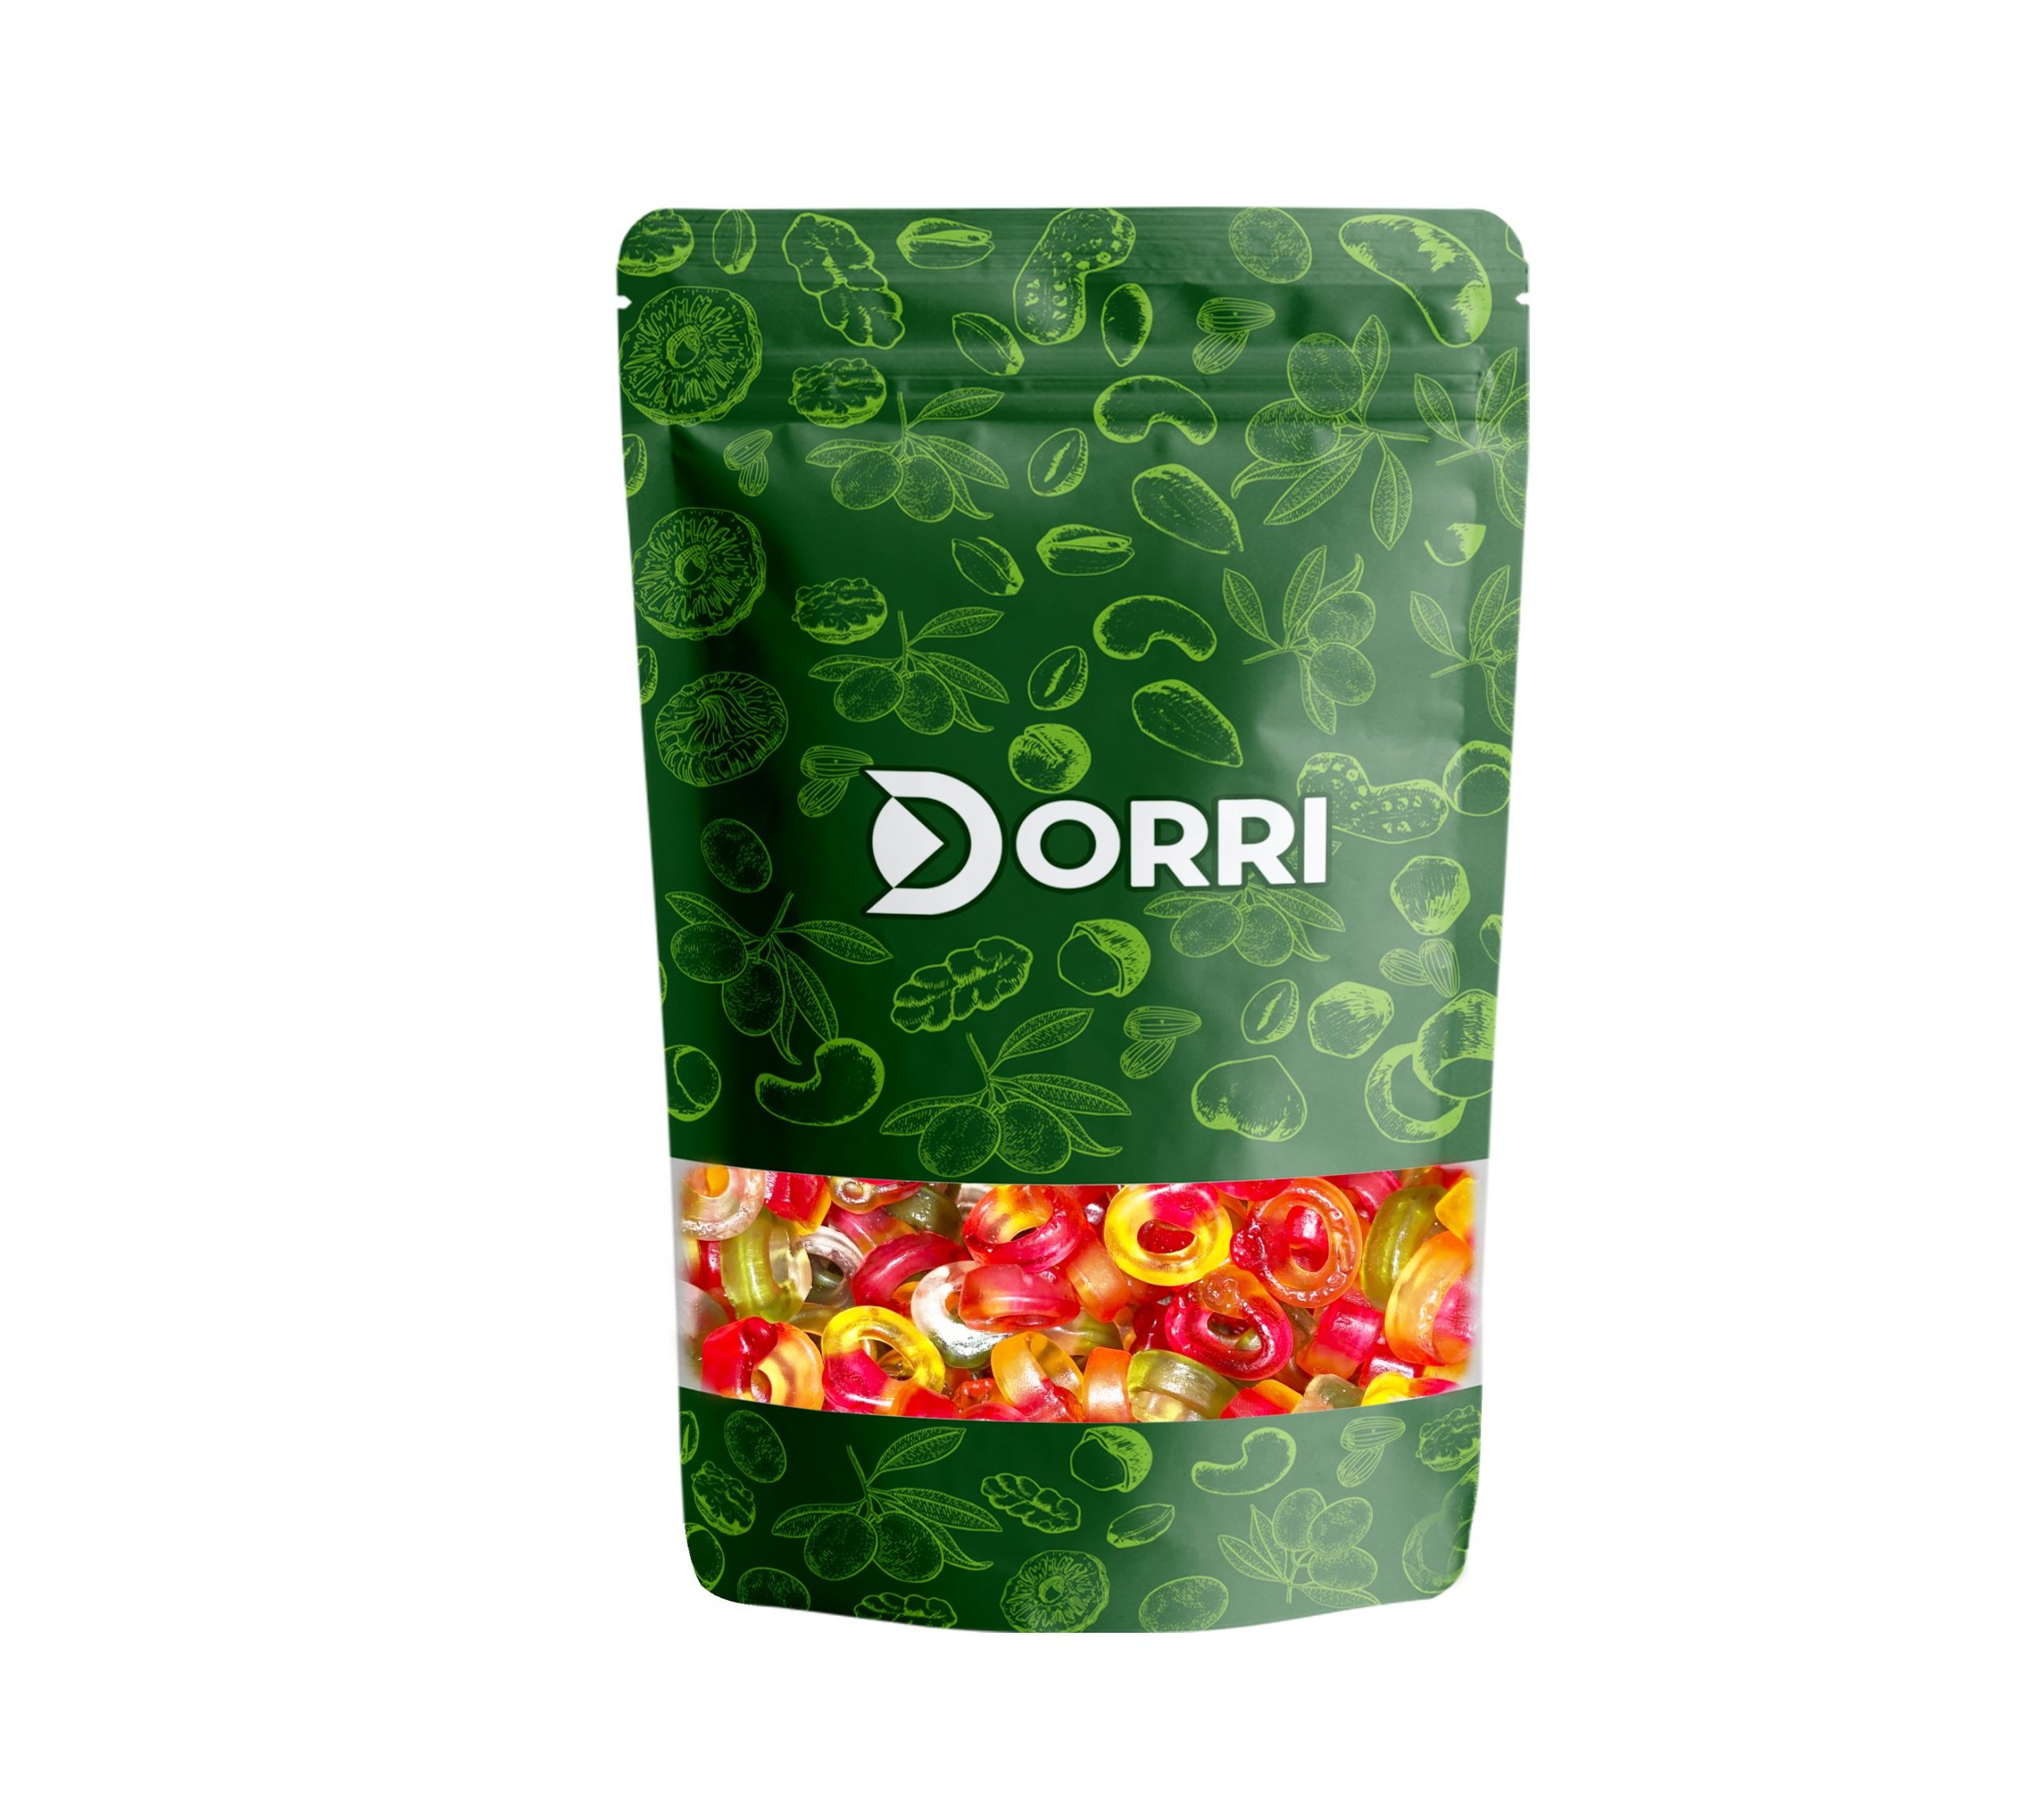 Dorri - Rings